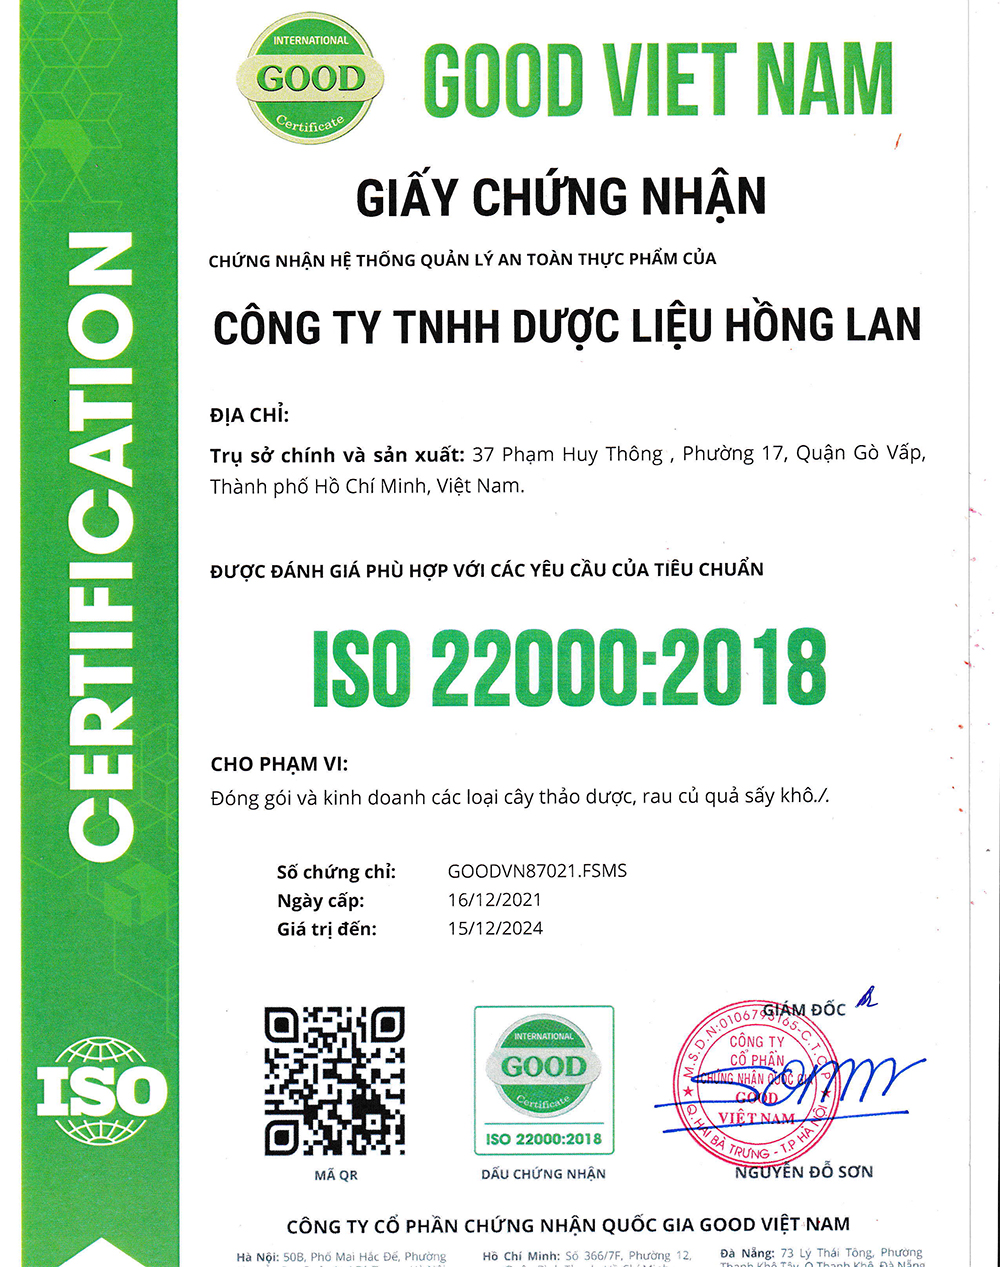 Công ty TNHH Dược Liệu Hồng Lan theo hệ thống quản lý an toàn thực phẩm ISO 22000:2018 được cấp bởi công ty cổ phần chứng nhận Quốc Gia Good Việt Nam (Good Viet Nam Certification Joint Stock Company)